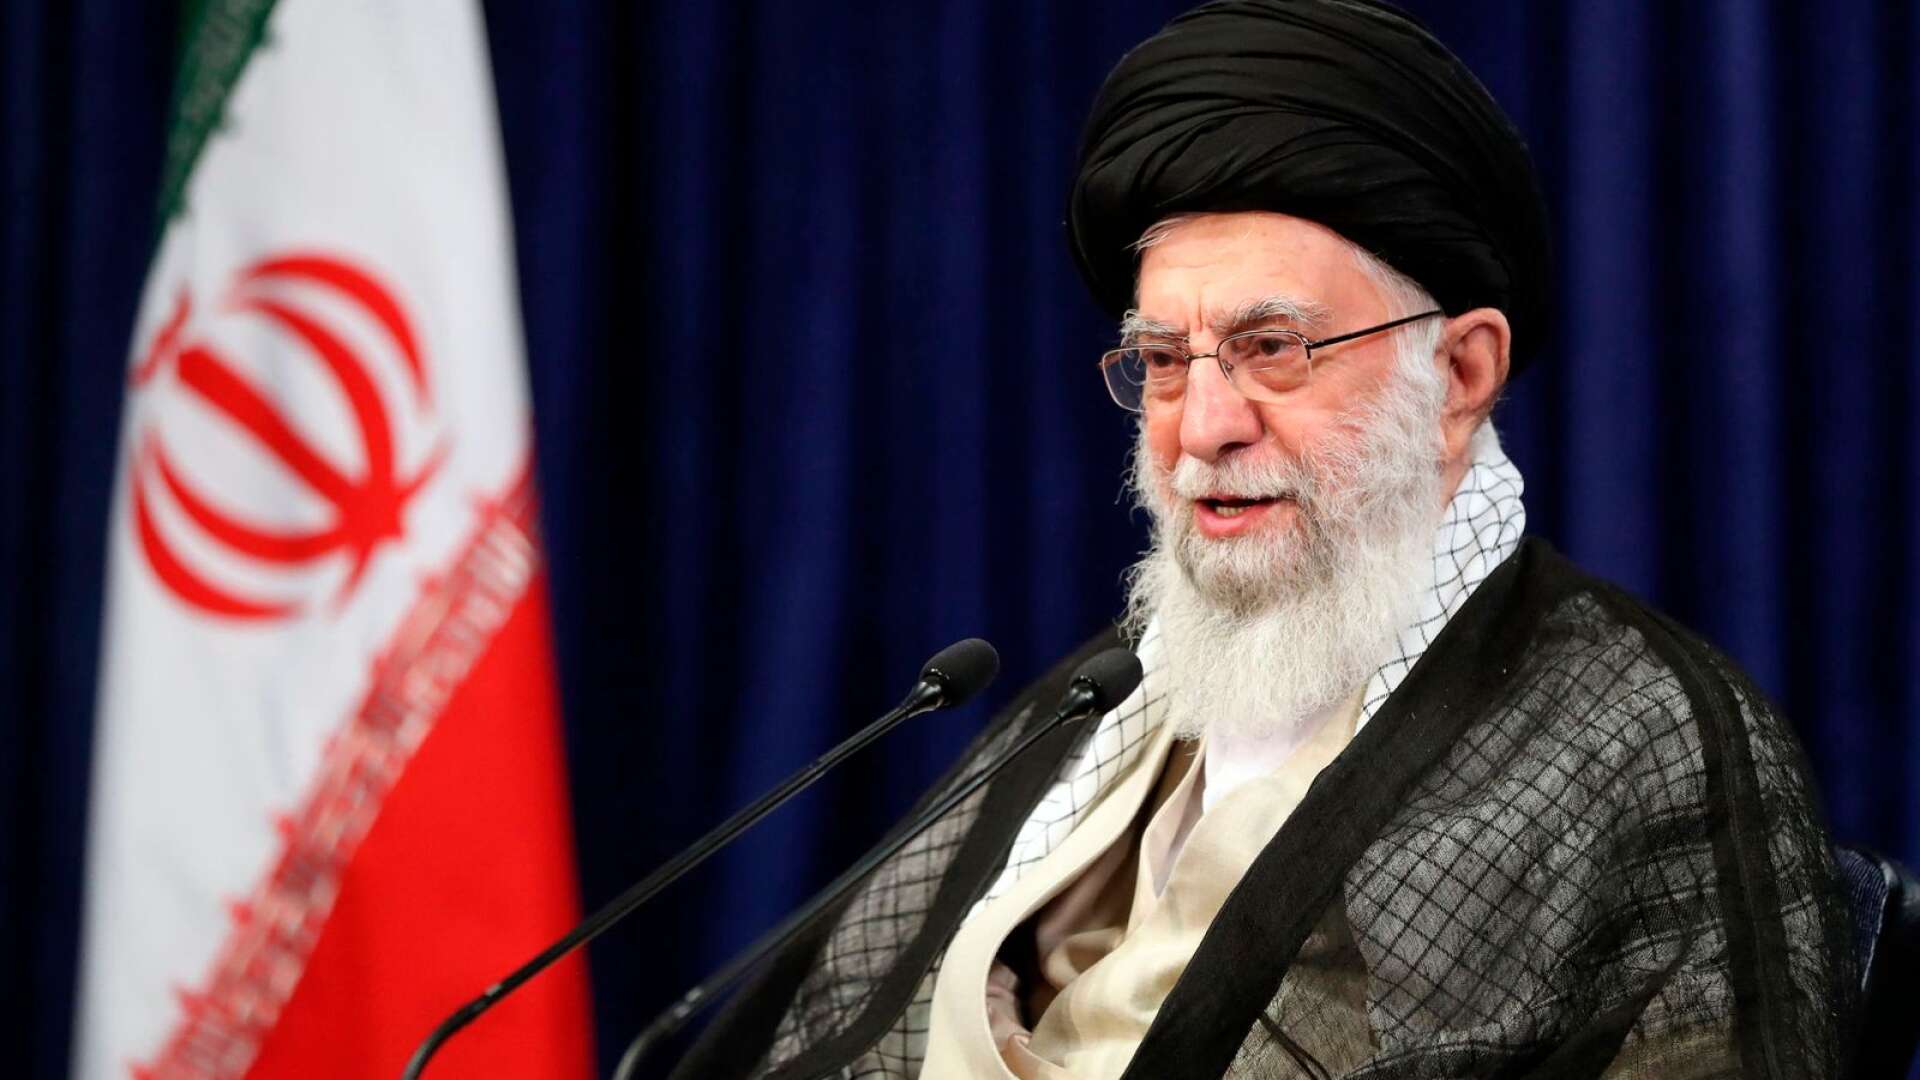 Desperata mullor försöker att klamra sig fast vid makten till varje pris. I vartenda framträdande under året har Ali Khamenei markerat att han inte tvekar att döda för att behålla makten, skriver Morteza Sadeghi.